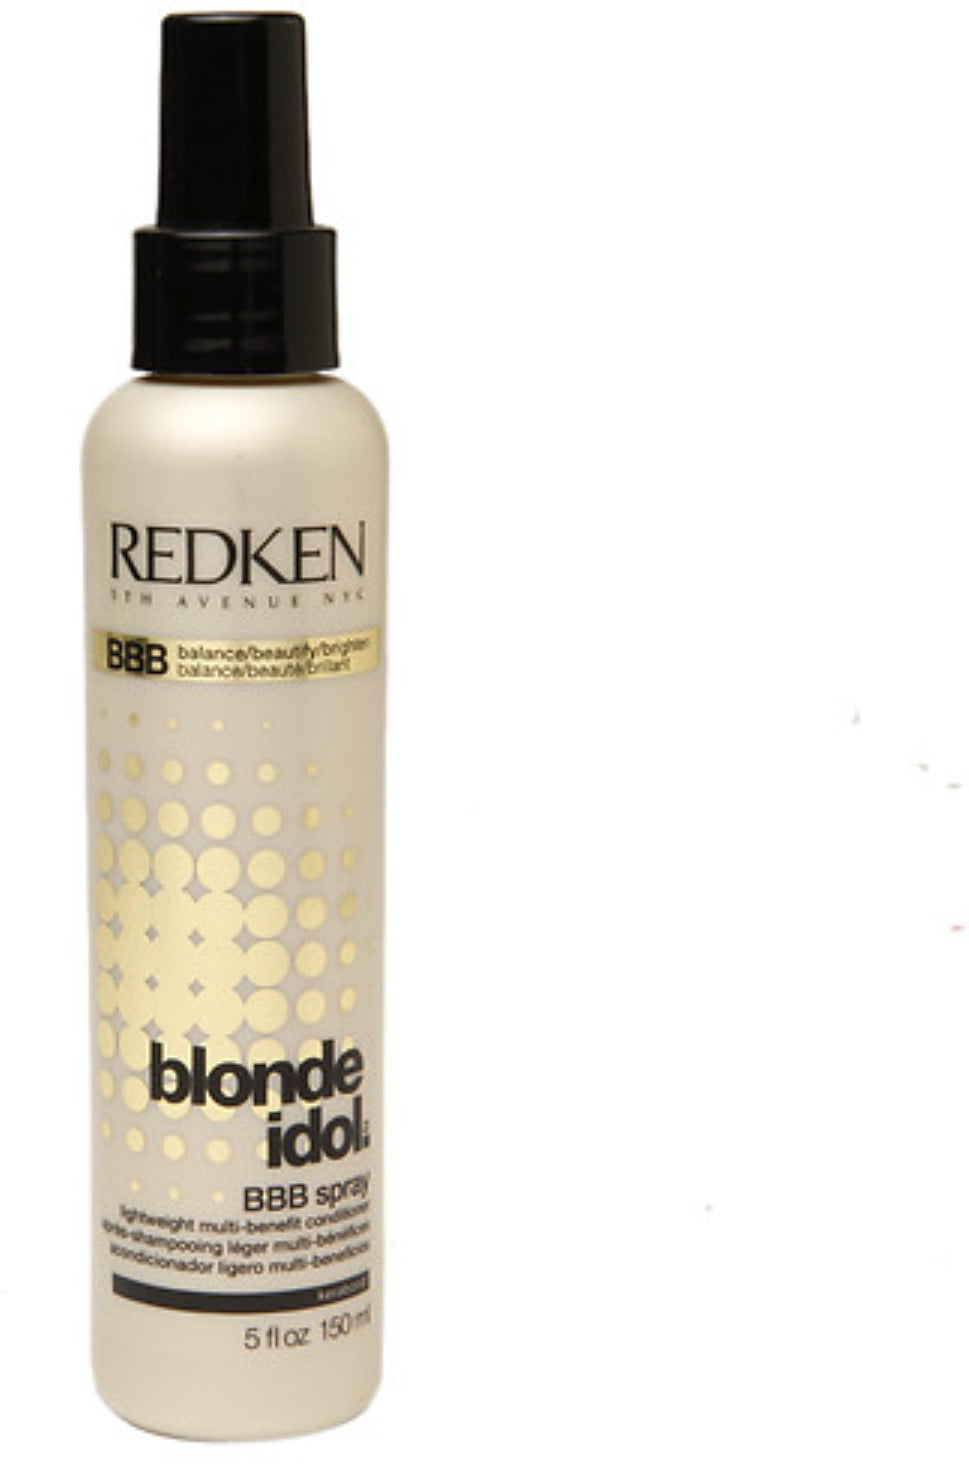 Blonde спрей. Redken blonde Idol. Redken спрей для волос. Спрей blonde. Спрей для блондинок.